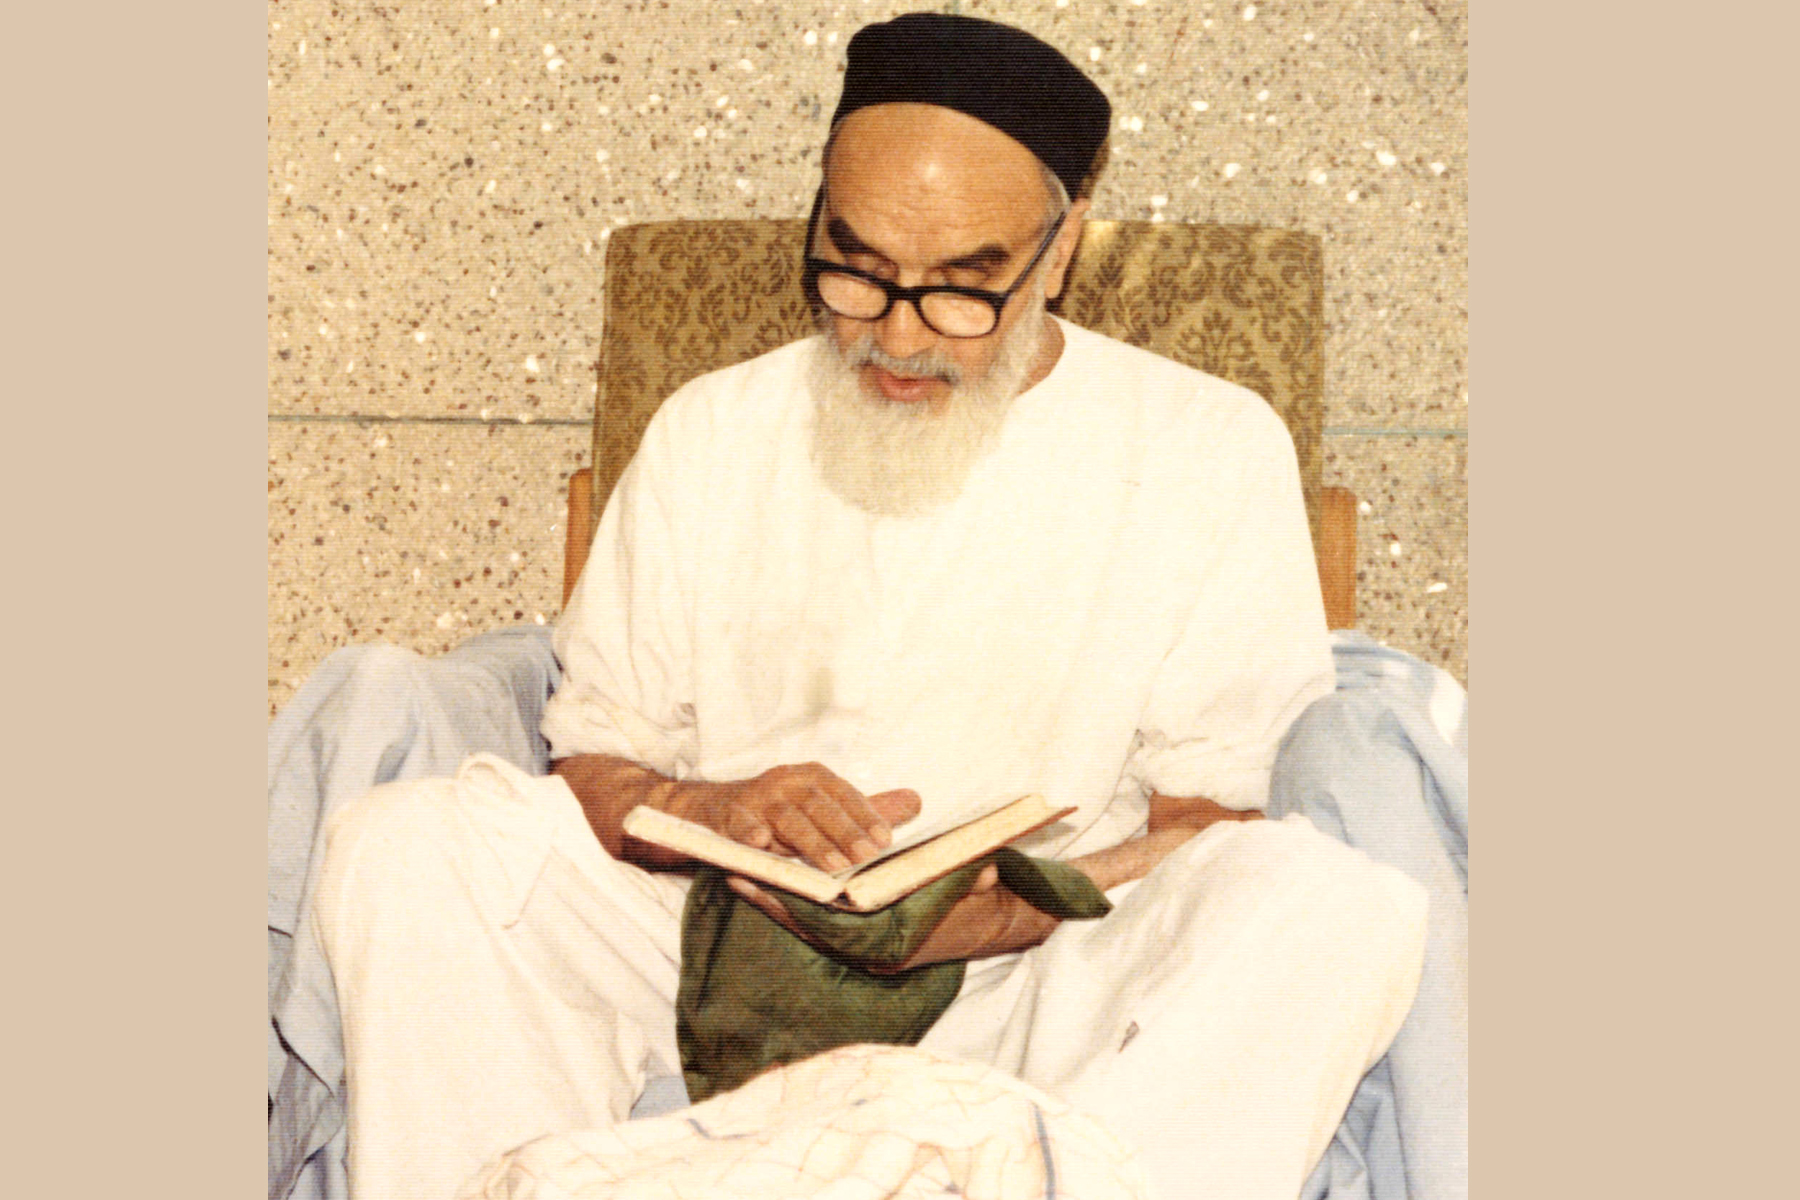  سلسلة من عبق الإمام الخميني (قدس سره) – الحلقة (85): نتيجة التعليم من دون التربية الروحية